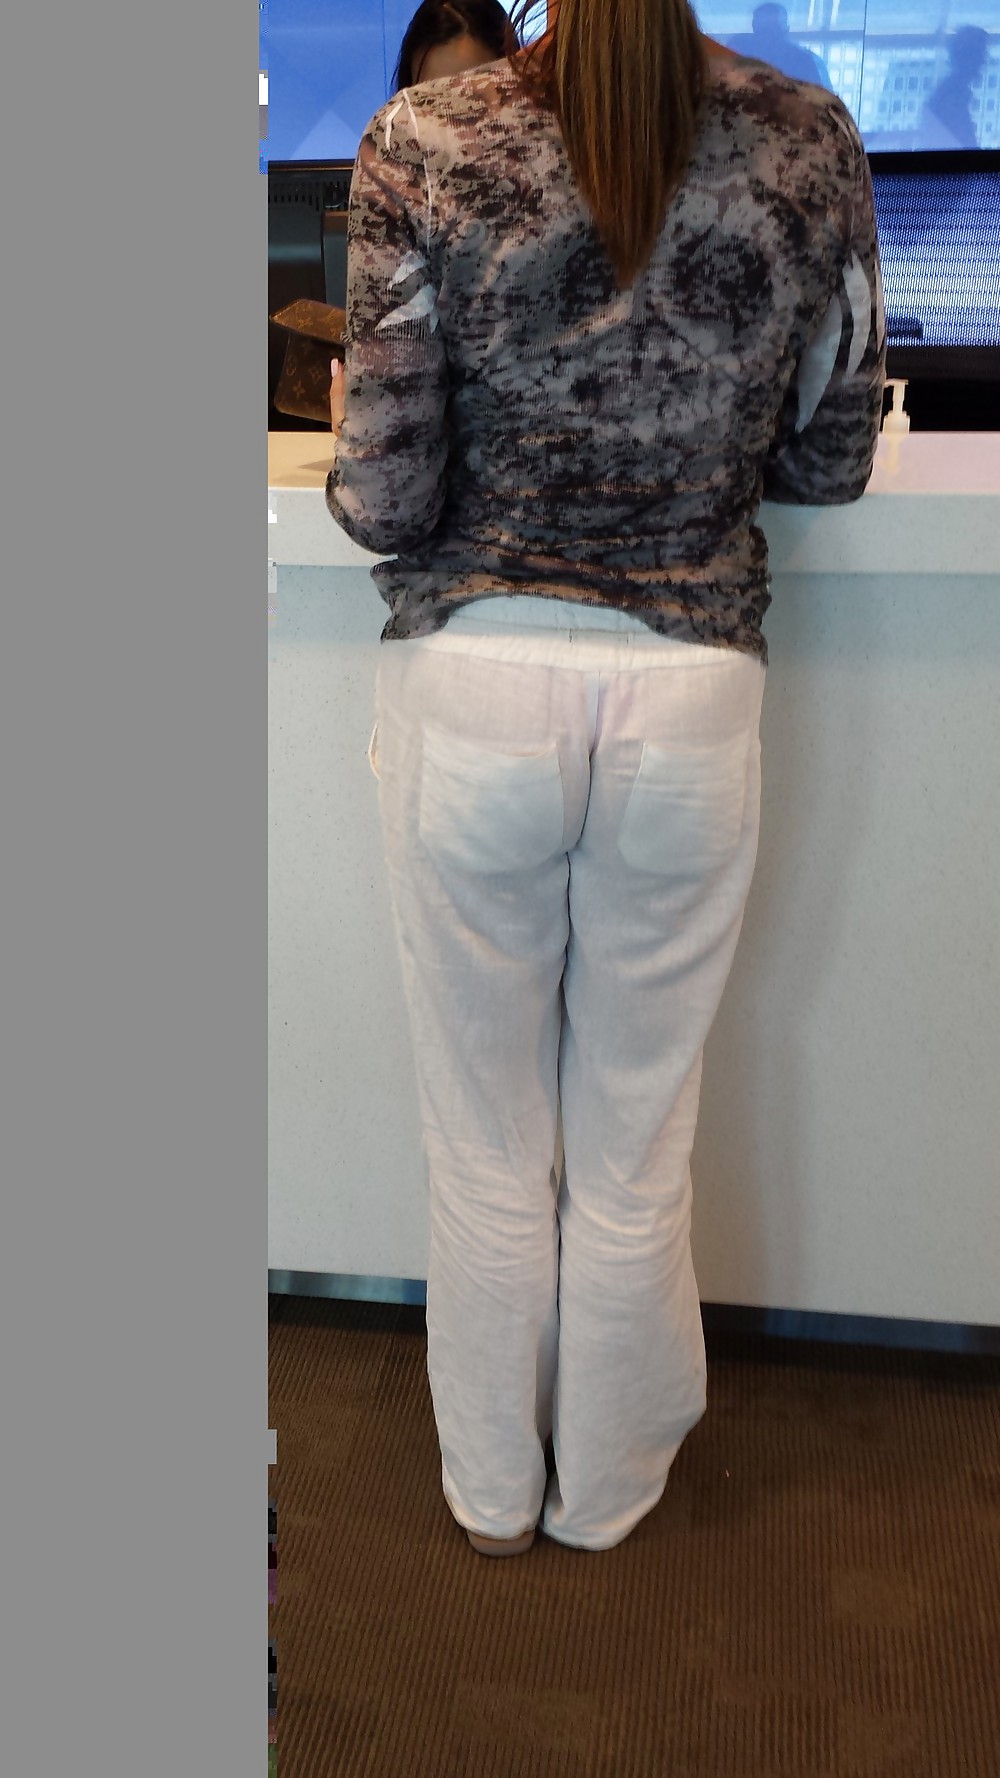 Sexy Voir-à Travers Le Pantalon Sur MILF à L'aéroport #36972956